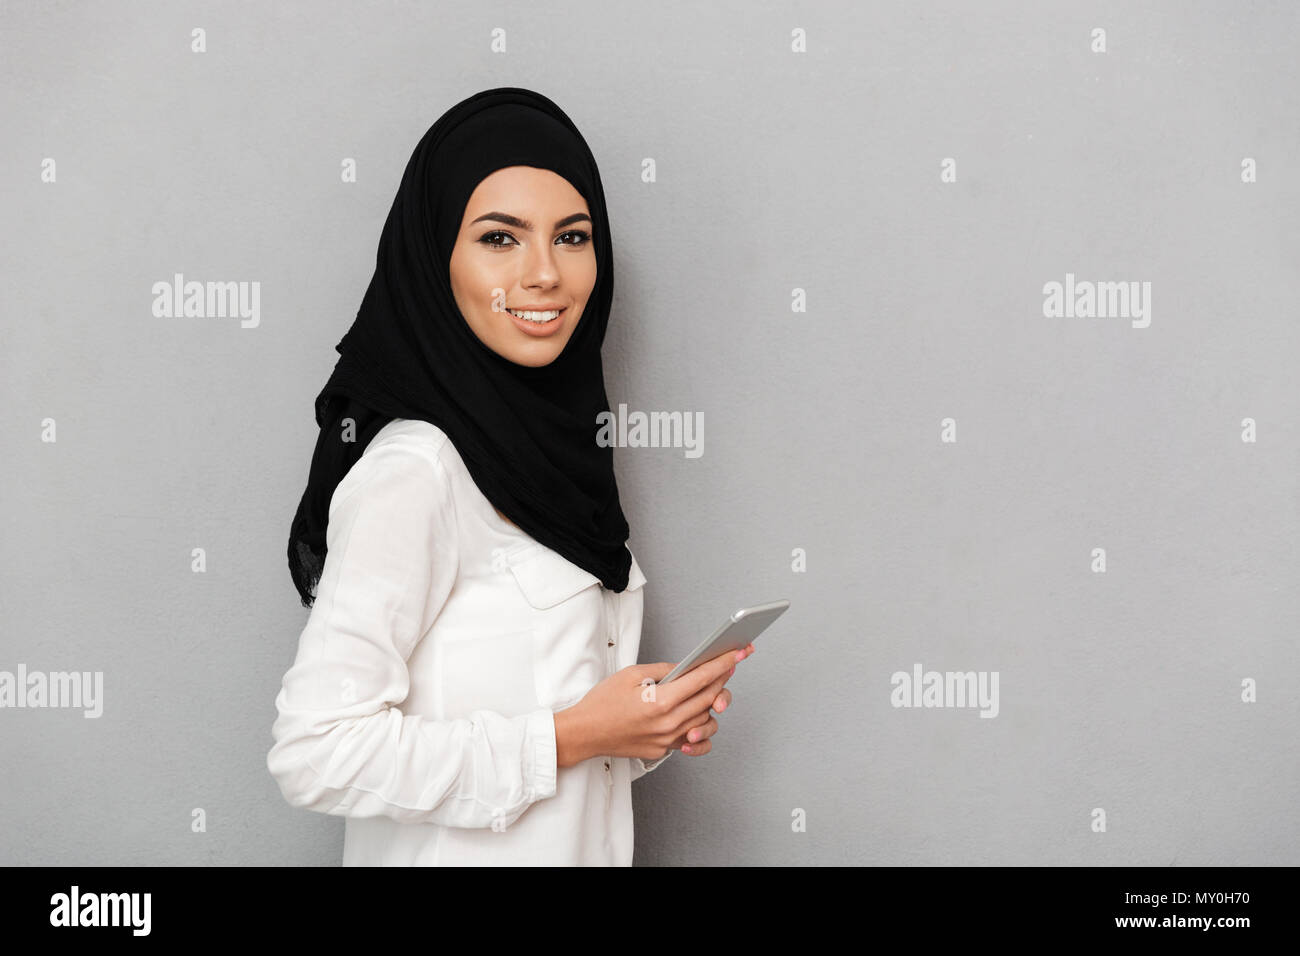 Superbe Portrait de femme arabe en voile avec maquillage oriental holding silver smartphone pendant à la caméra à l'arrière-plan gris plus isolés Banque D'Images